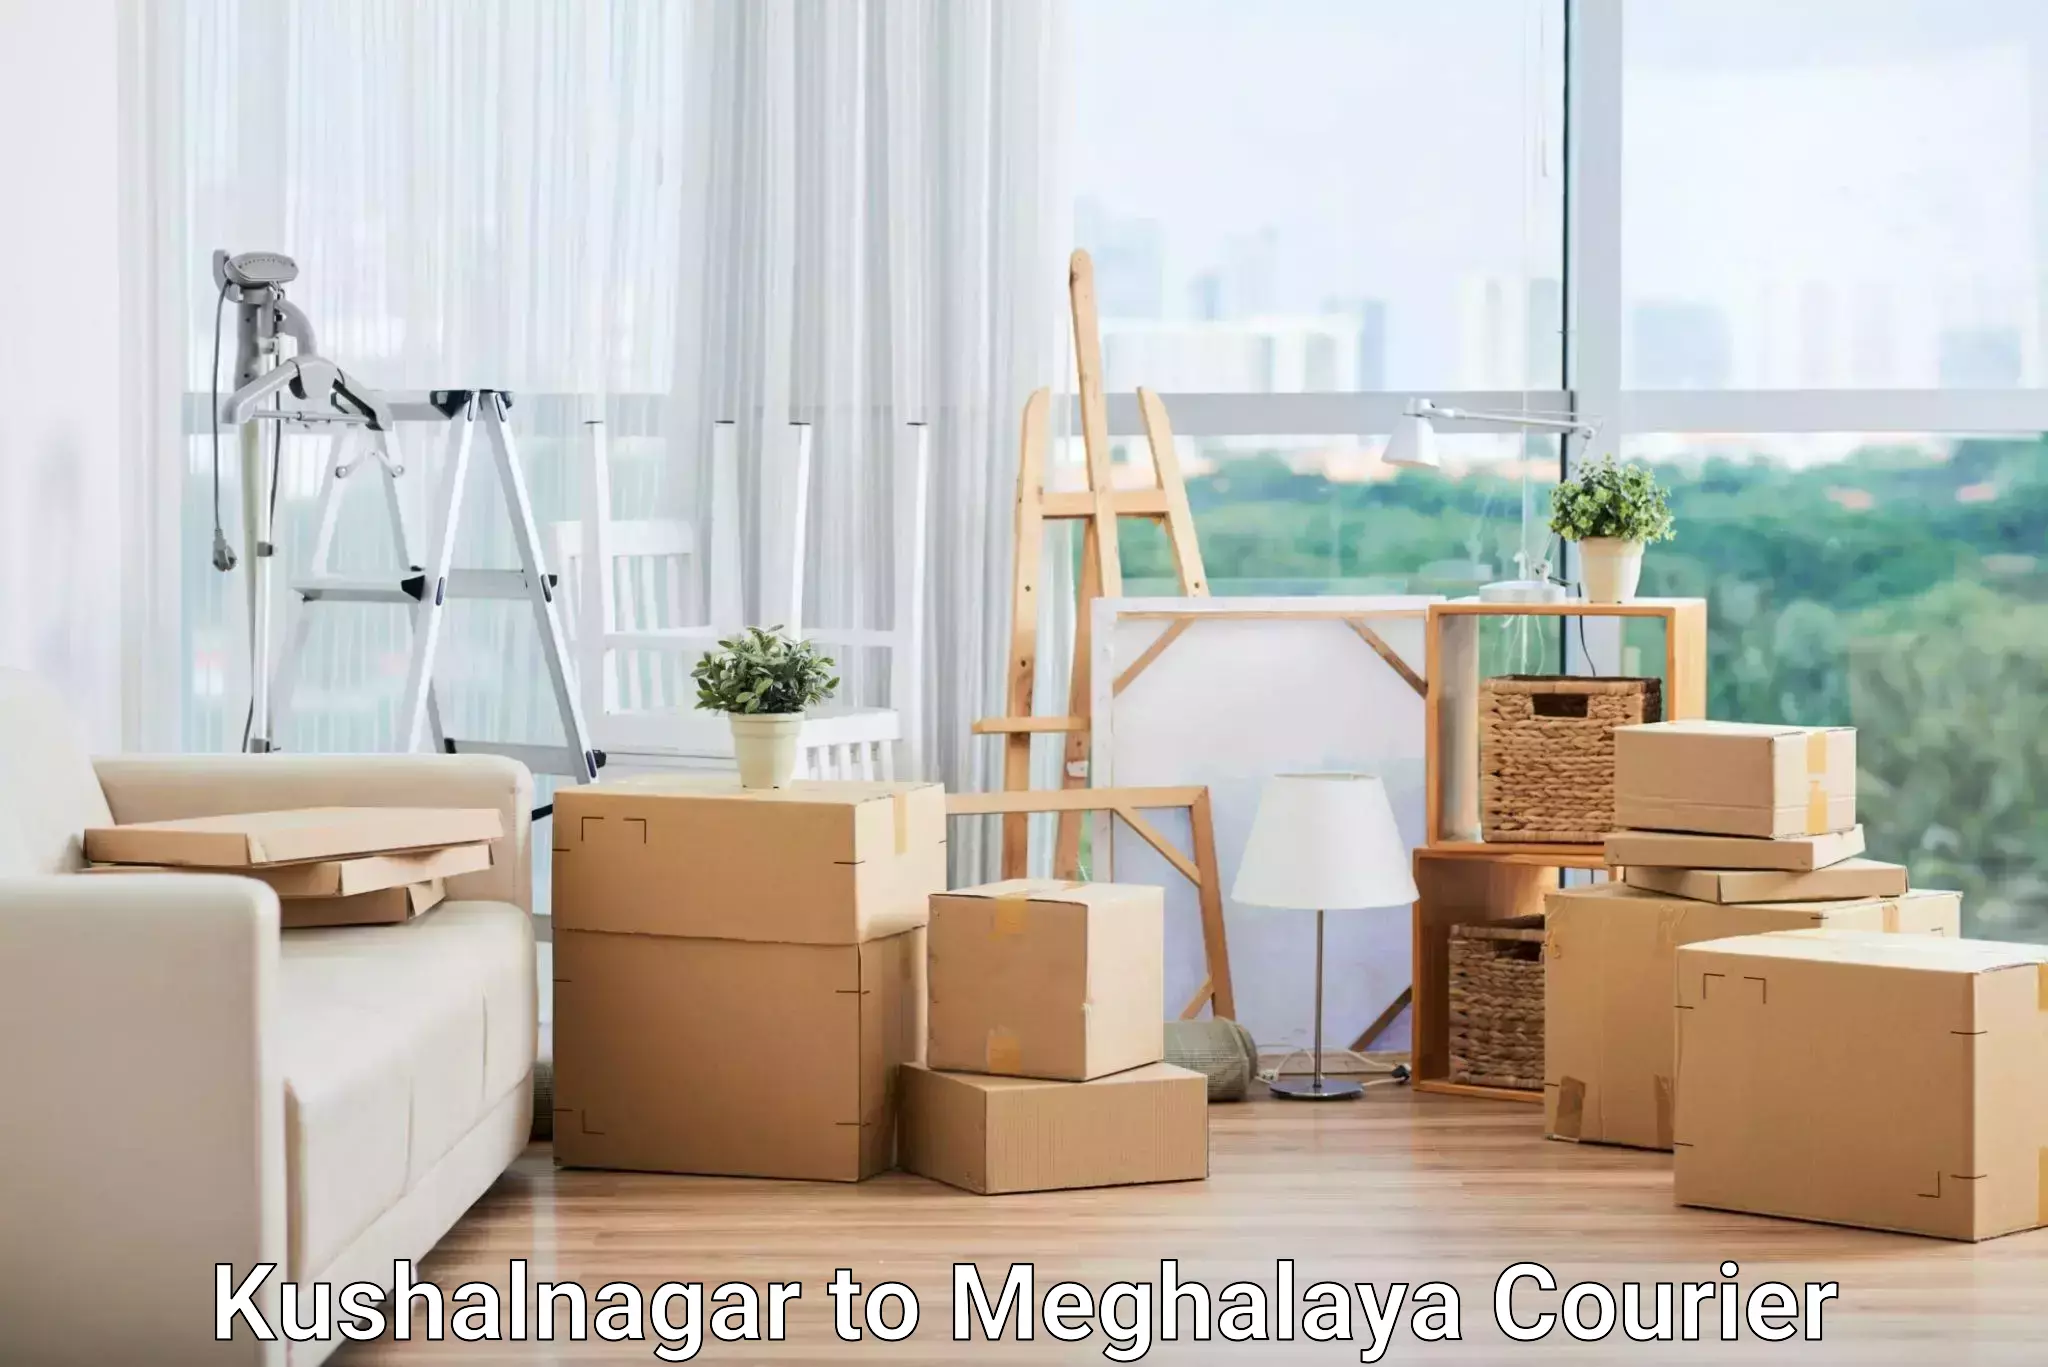 Digital courier platforms Kushalnagar to Meghalaya